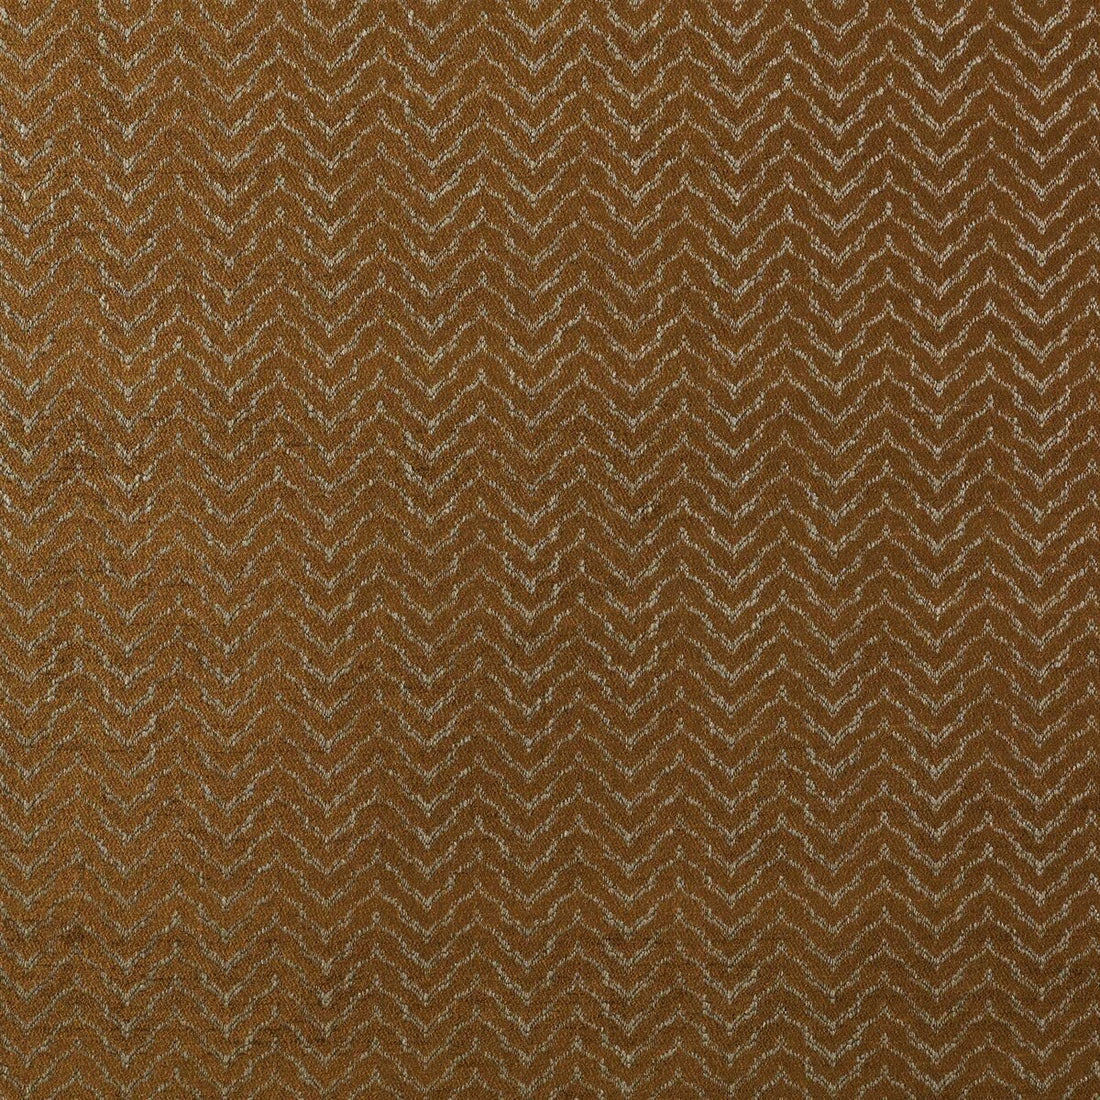 Sella fabric in oro viejo color - pattern GDT5180.004.0 - by Gaston y Daniela in the Lorenzo Castillo II collection